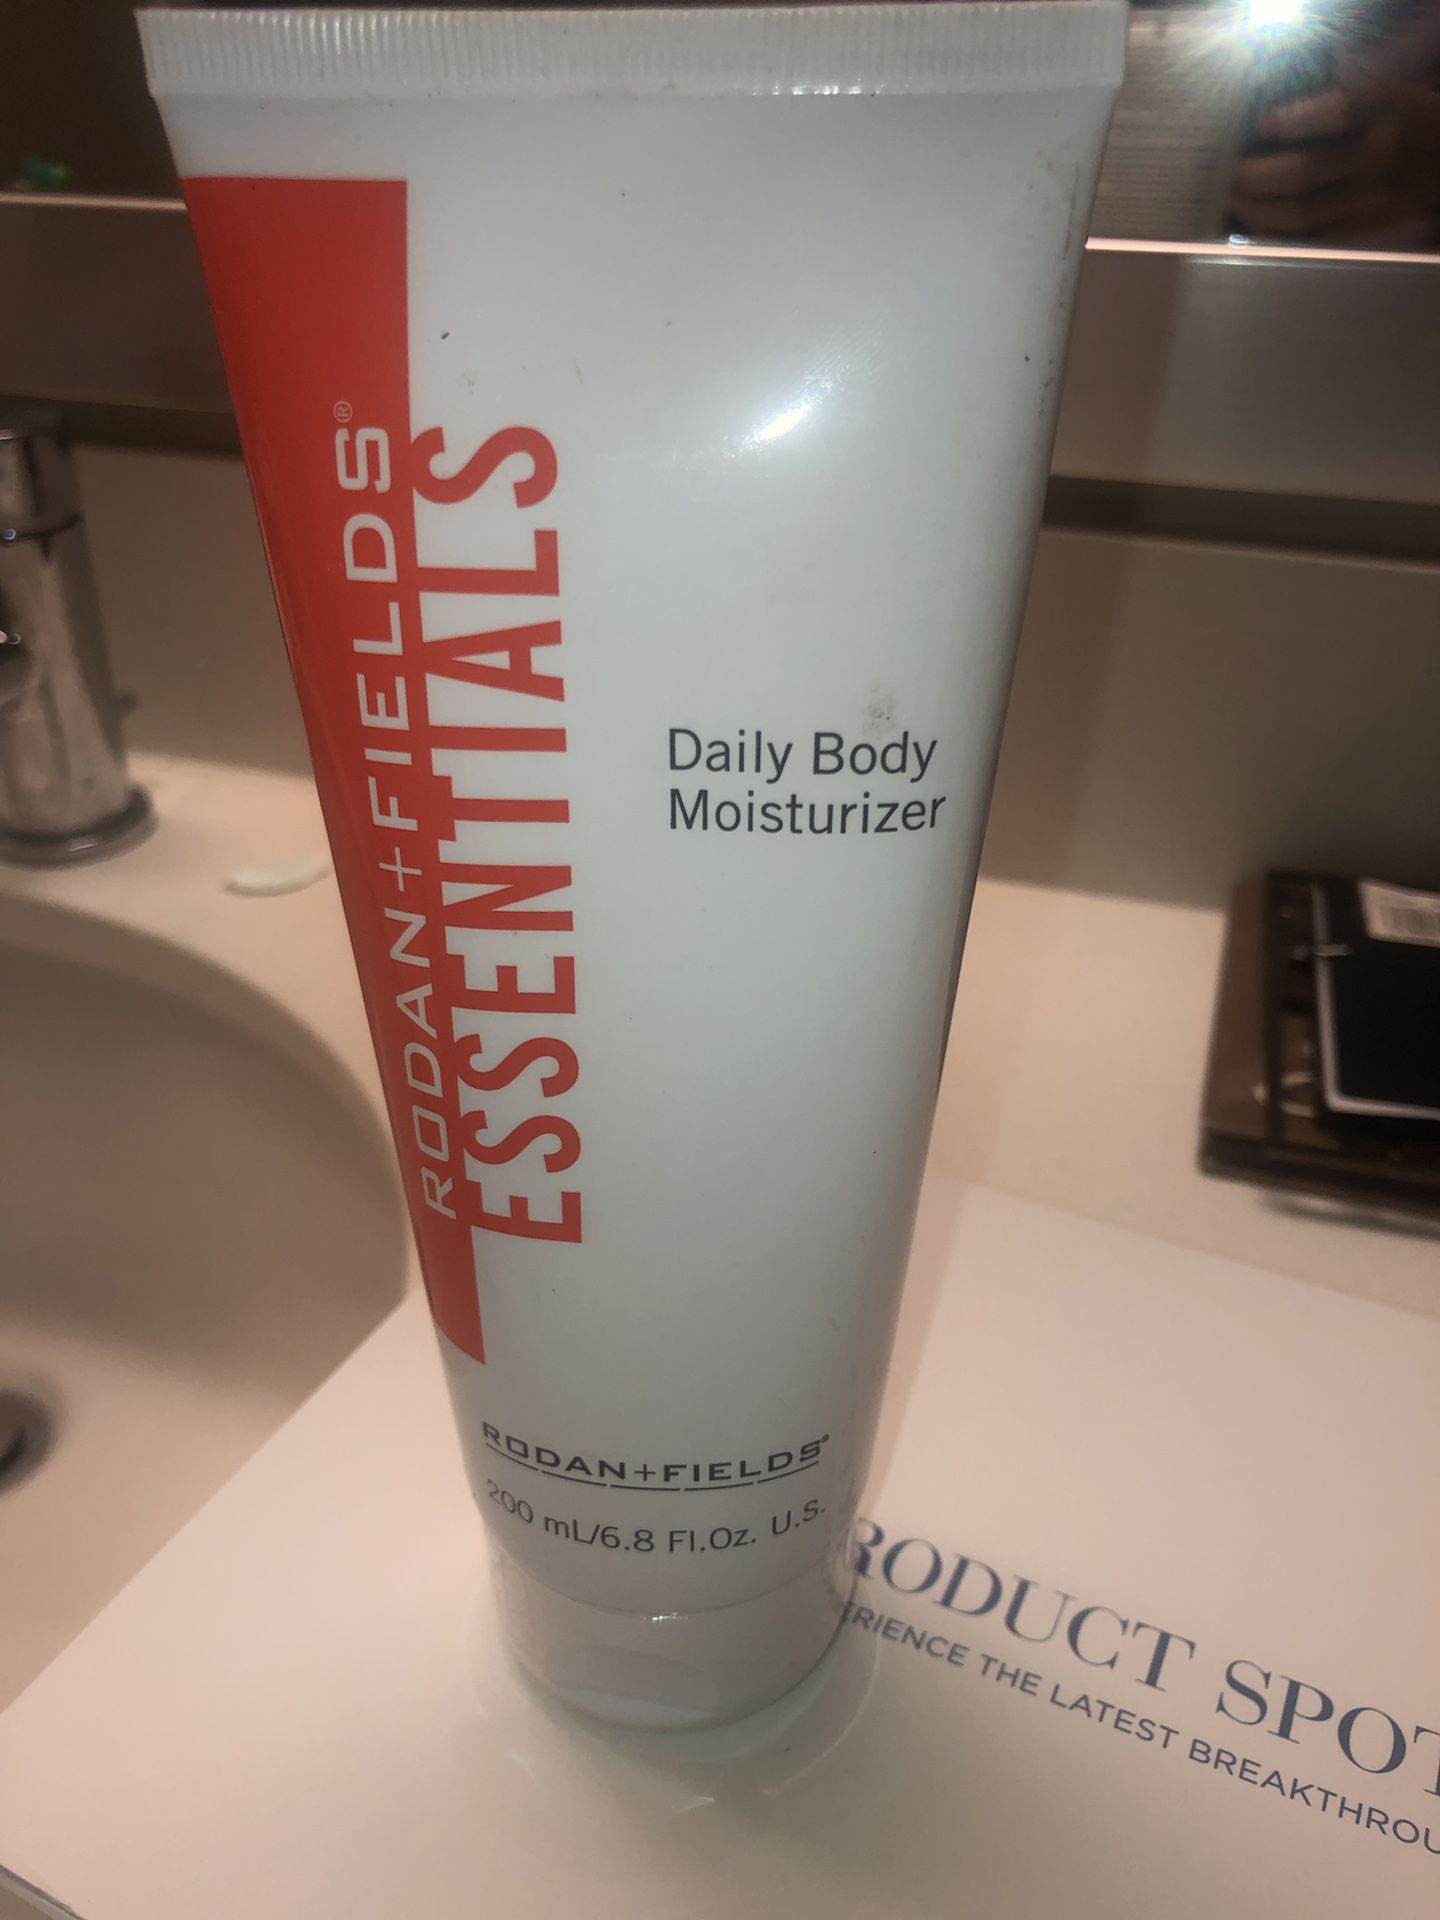 Daily body moisturizer rodan and fields